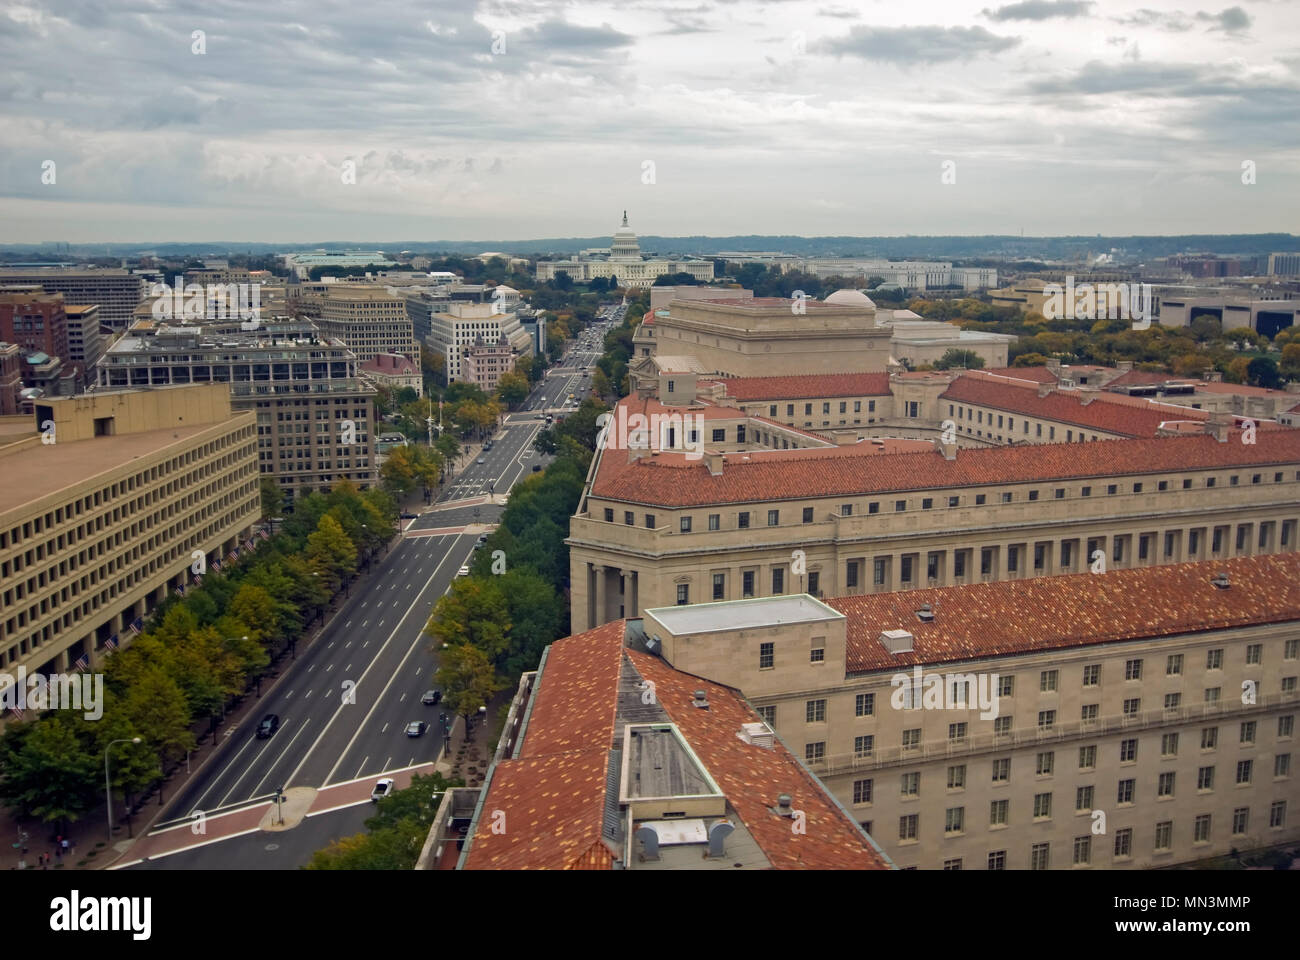 Ein Luftbild von Washington DC, wie aus der Alten Post Tower gesehen. Die  Hauptstadt befindet sich in der Ferne gesehen Stockfotografie - Alamy